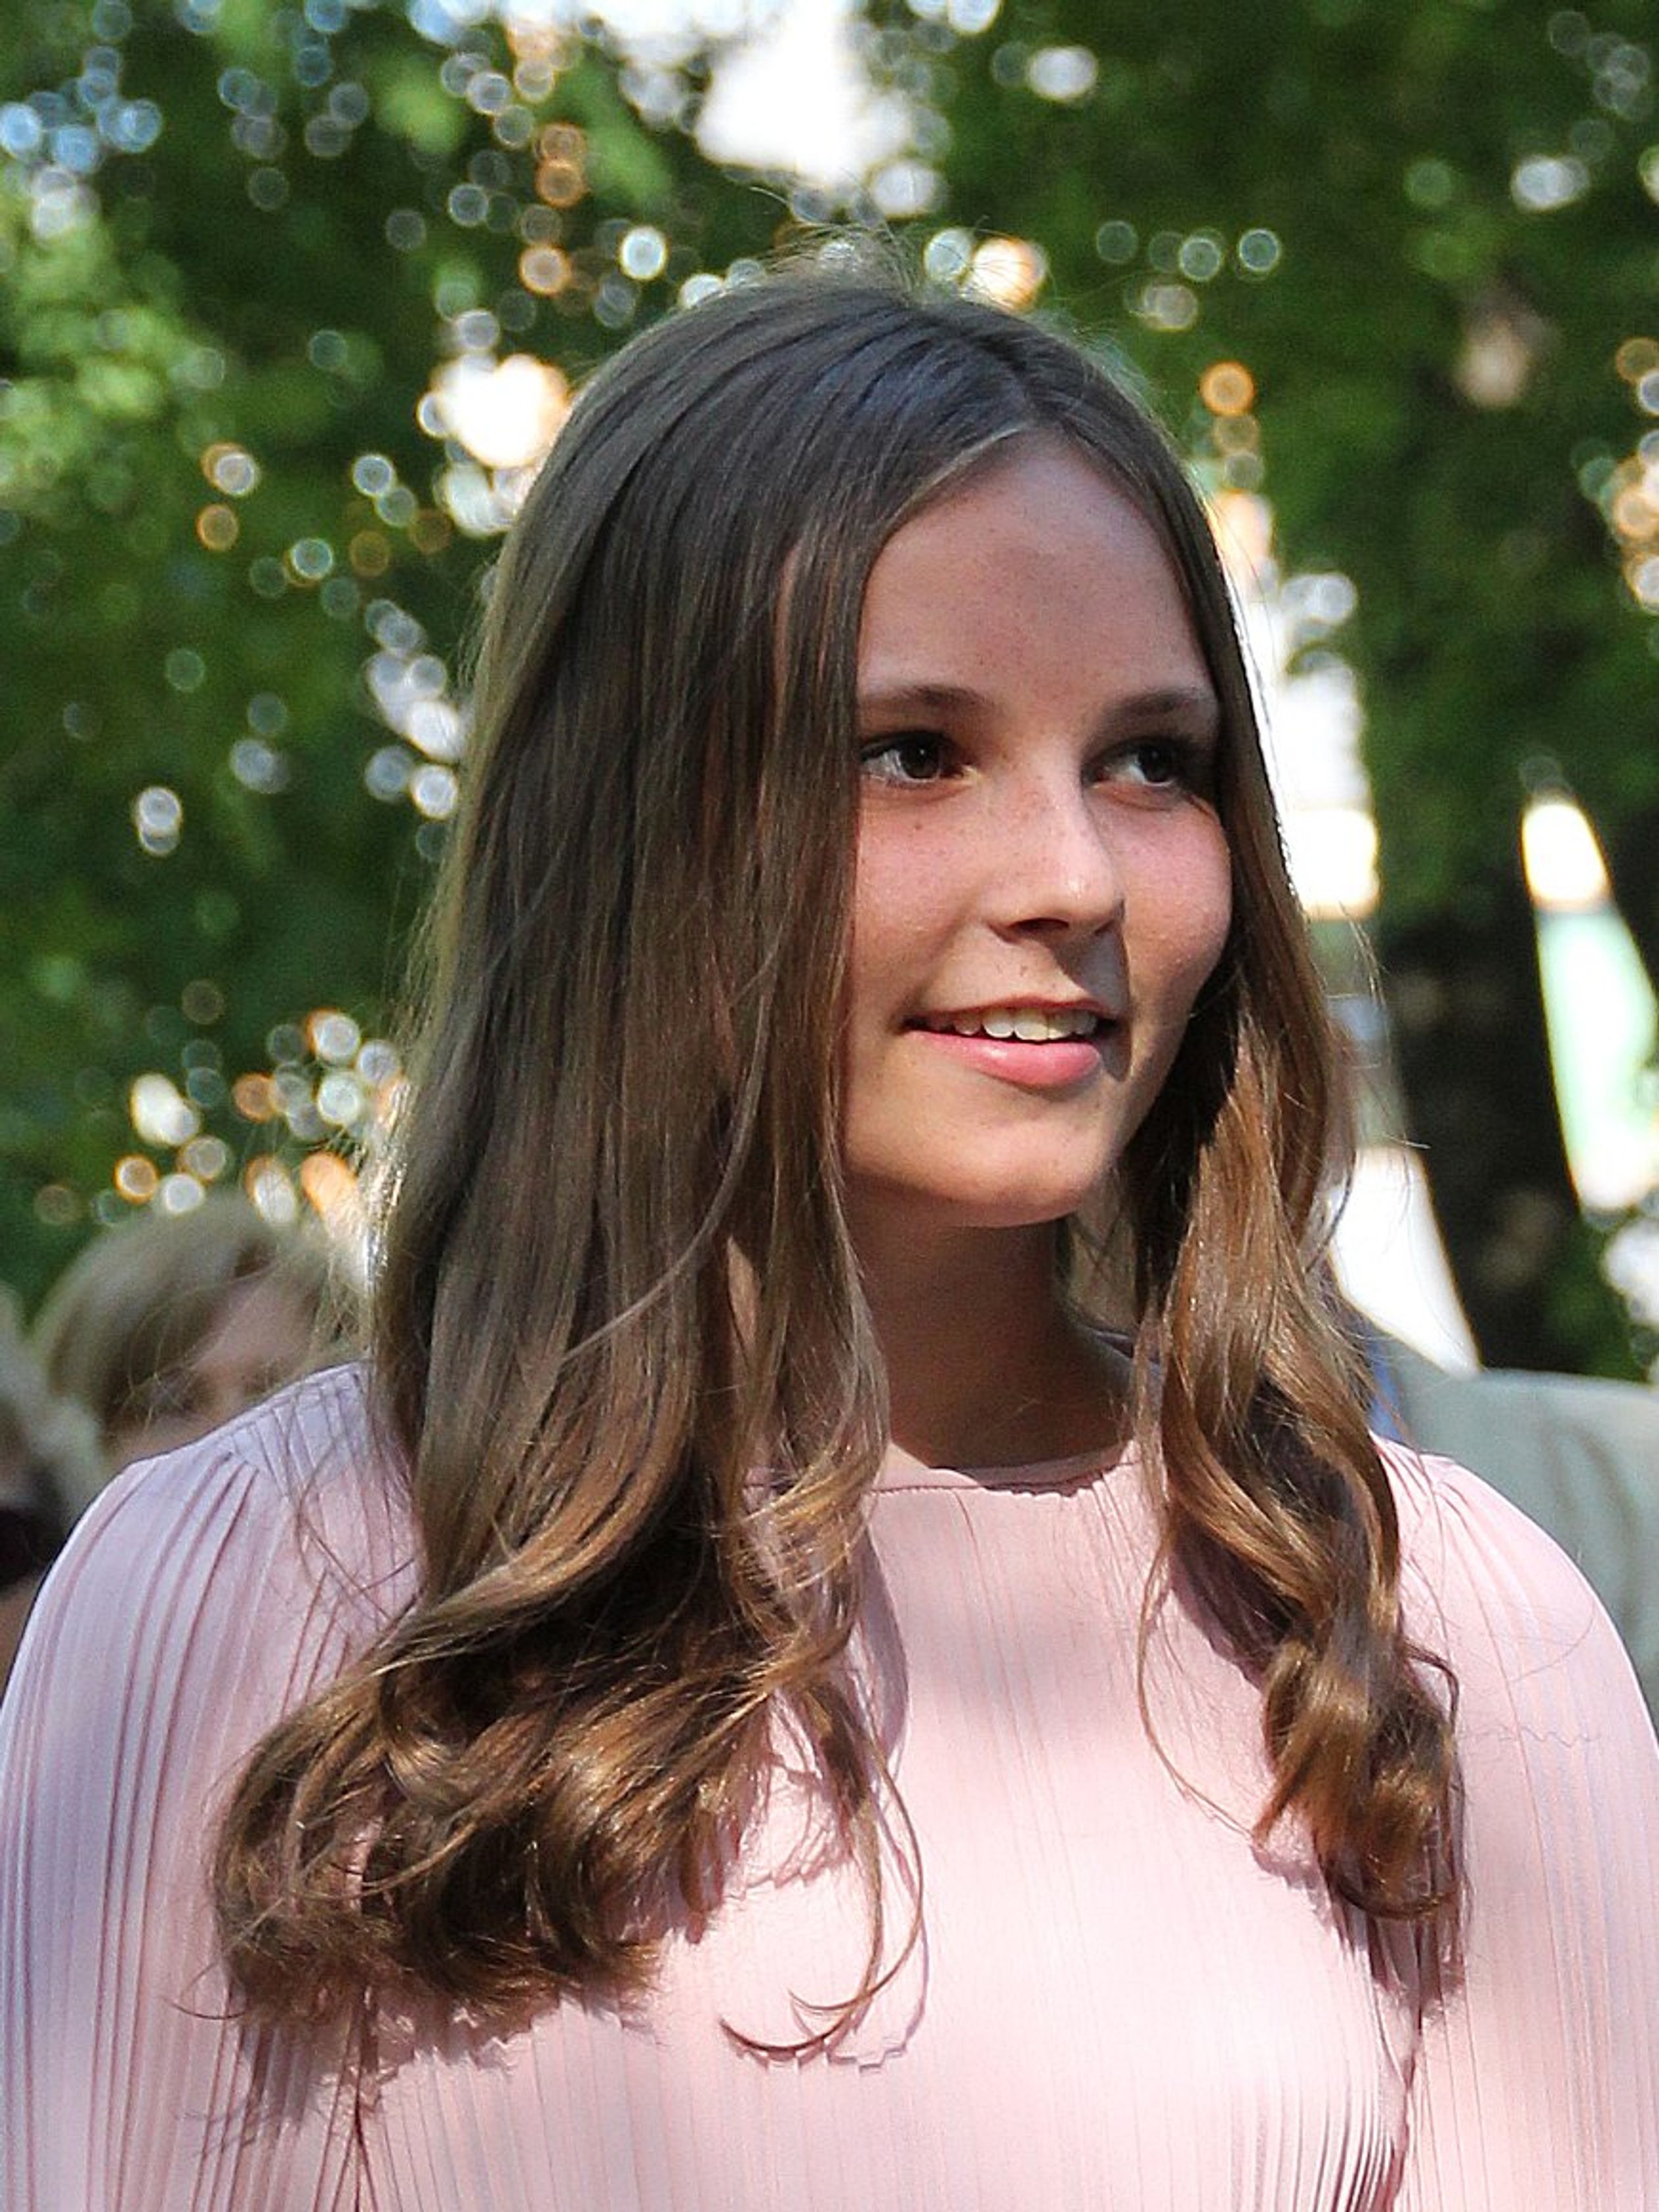 Ingrid-Alexandra (14) tijdens een bezoek aan het naar  haar vernoemde beeldenpark in Oslo, juni